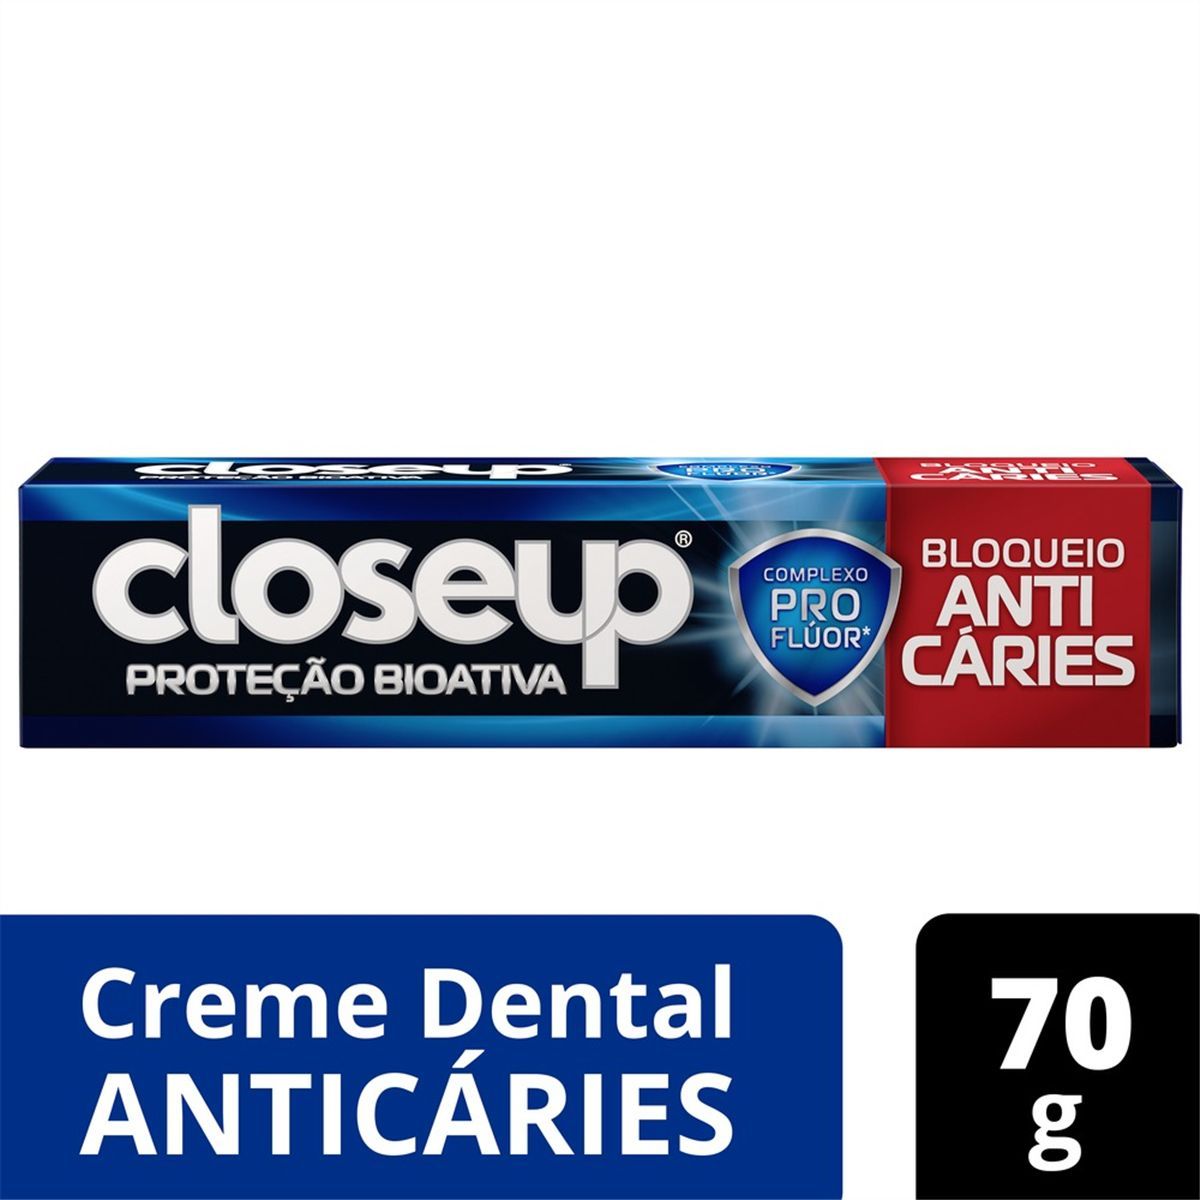 Creme Dental Closeup Proteção Biotiva Bloqueio Anti Cáries 70g image number 1